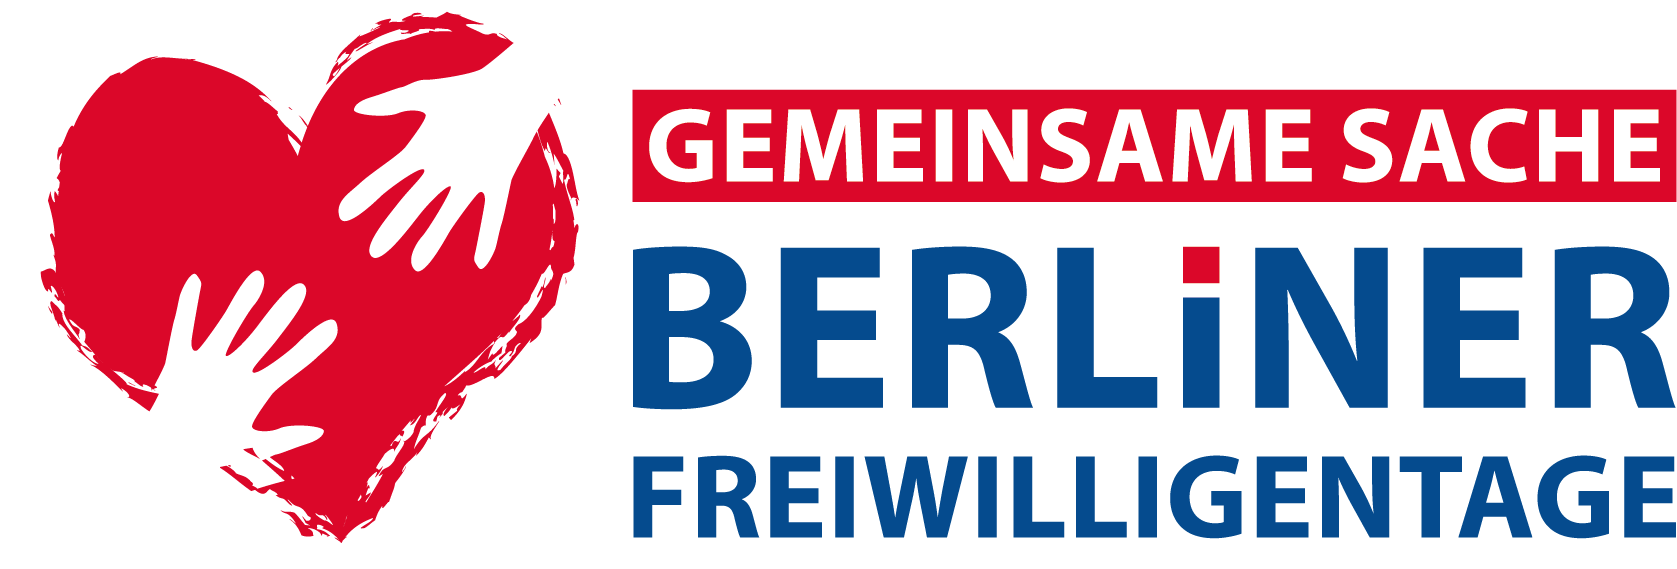 Gemeinsame Sache – Berliner Freiwilligentage